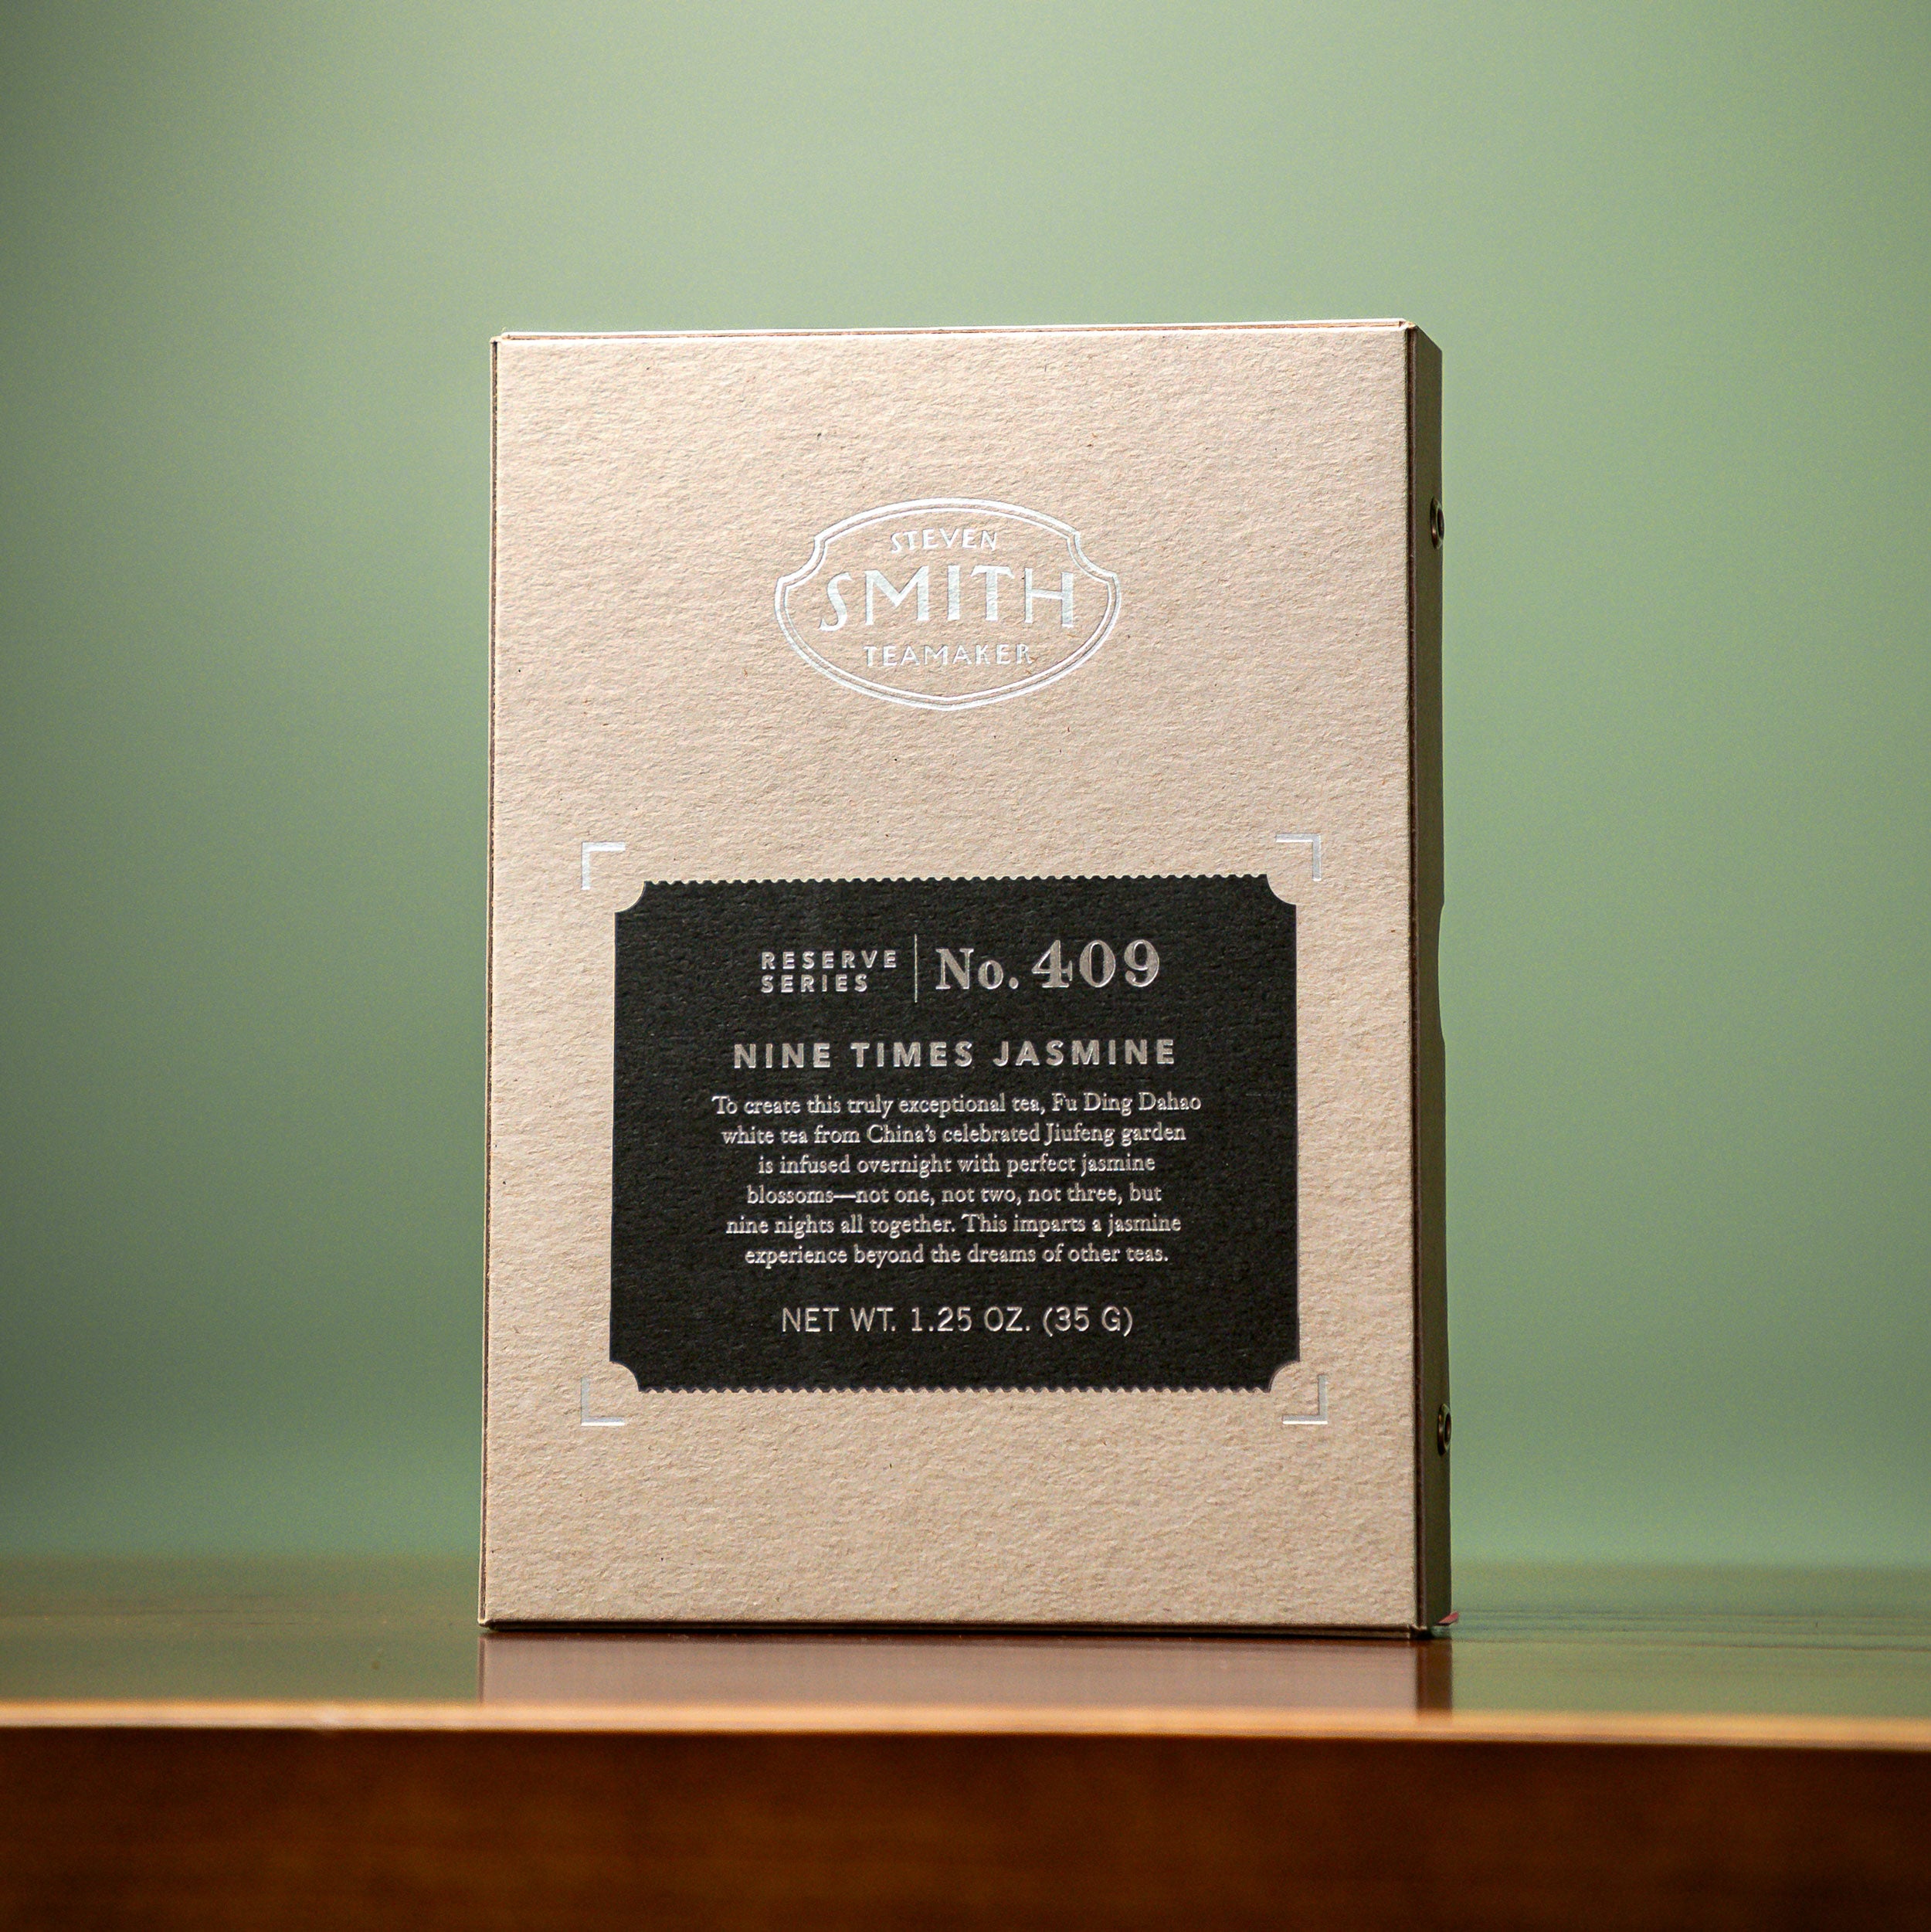 Smith Tea - Moment of Zen Matcha Kit, Gift Bundle - Smith Exclusive